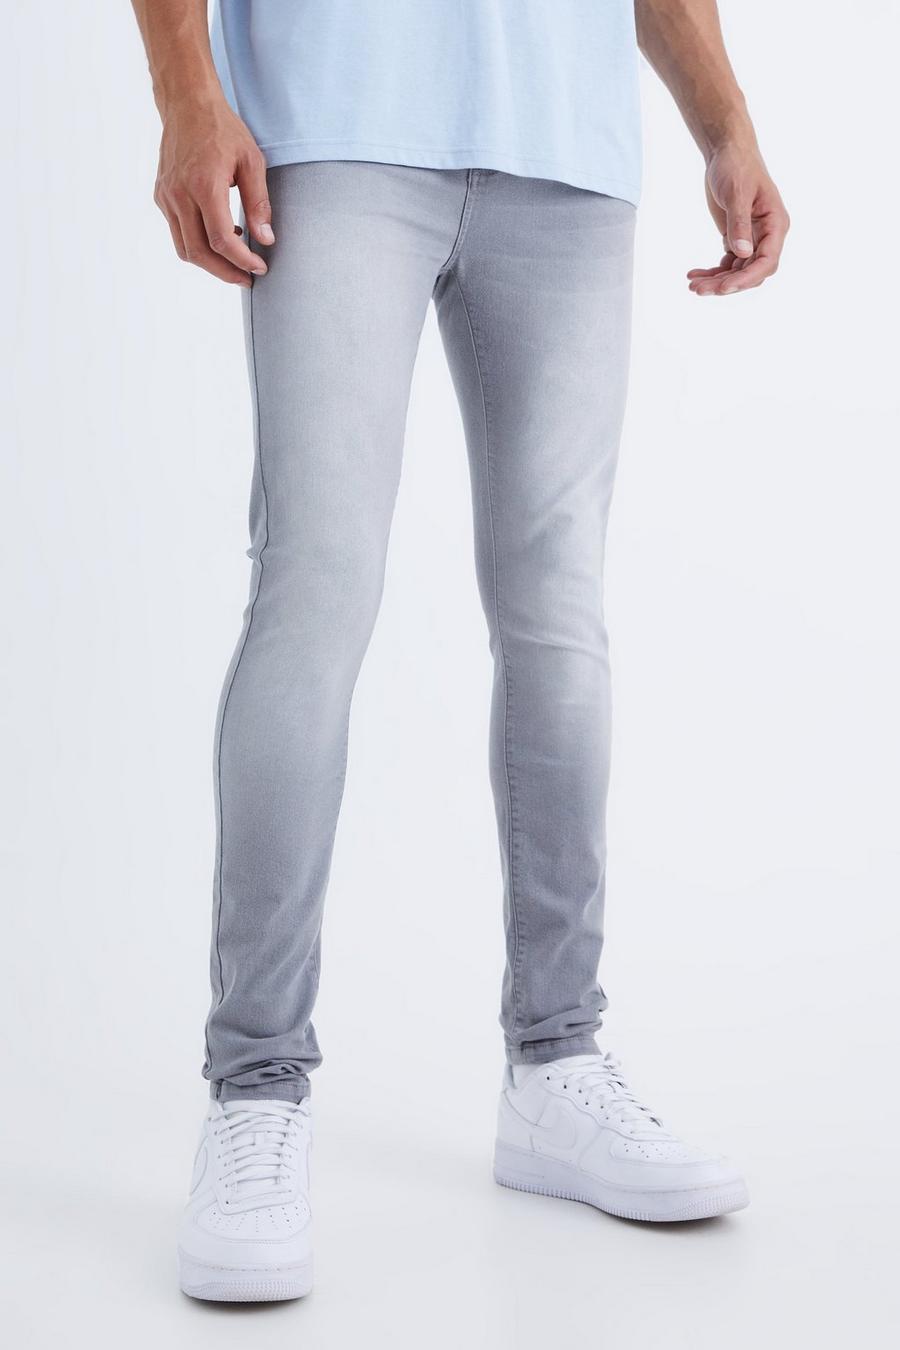 Mid grey gris Tall Super Skinny Stretch Jean